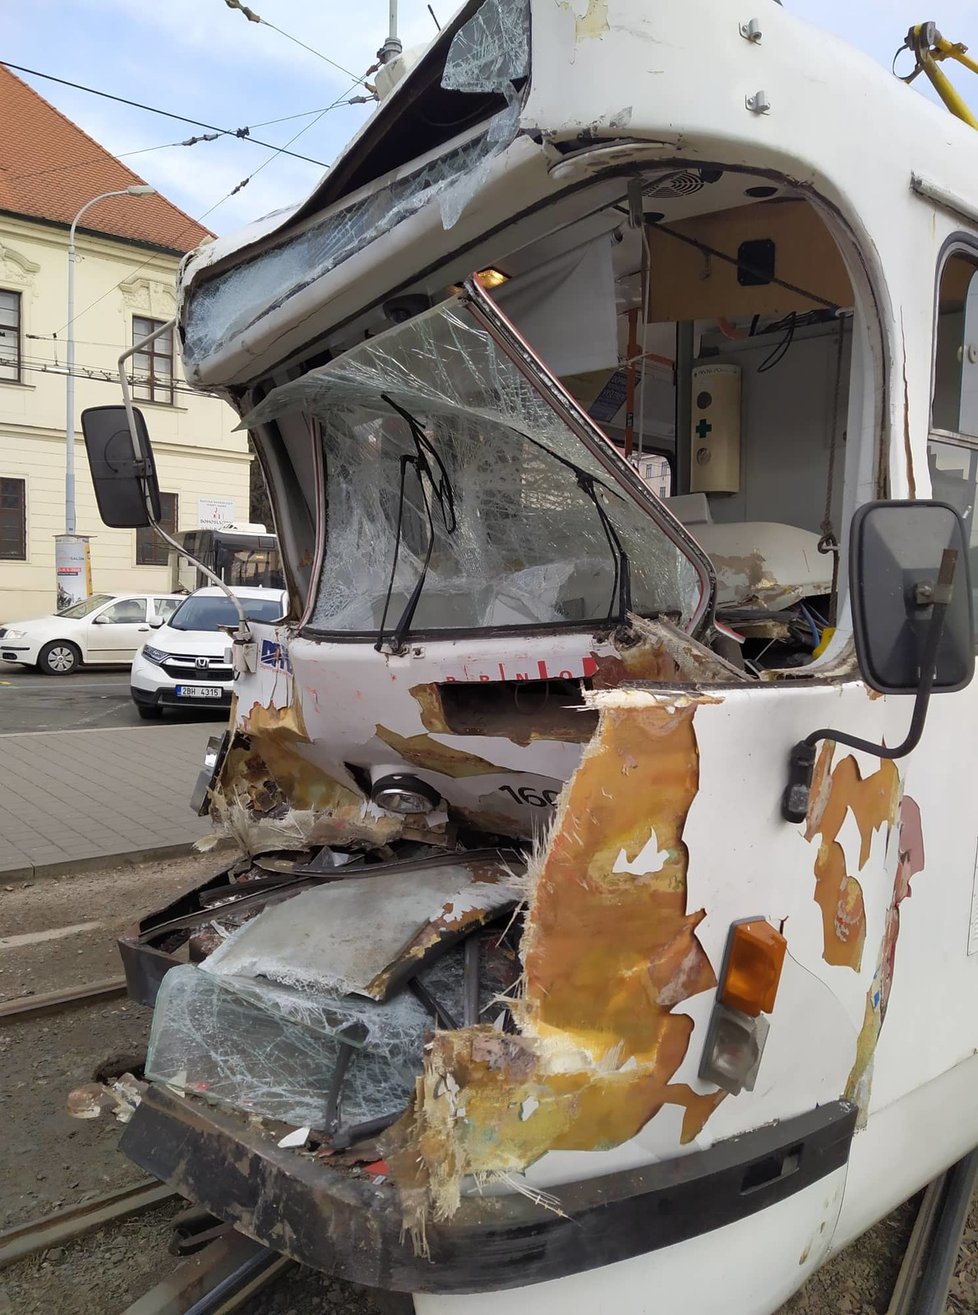 V brněnské Křížově ulici se srazily dvě tramvaje, záchranka ošetřovala několik zraněných.